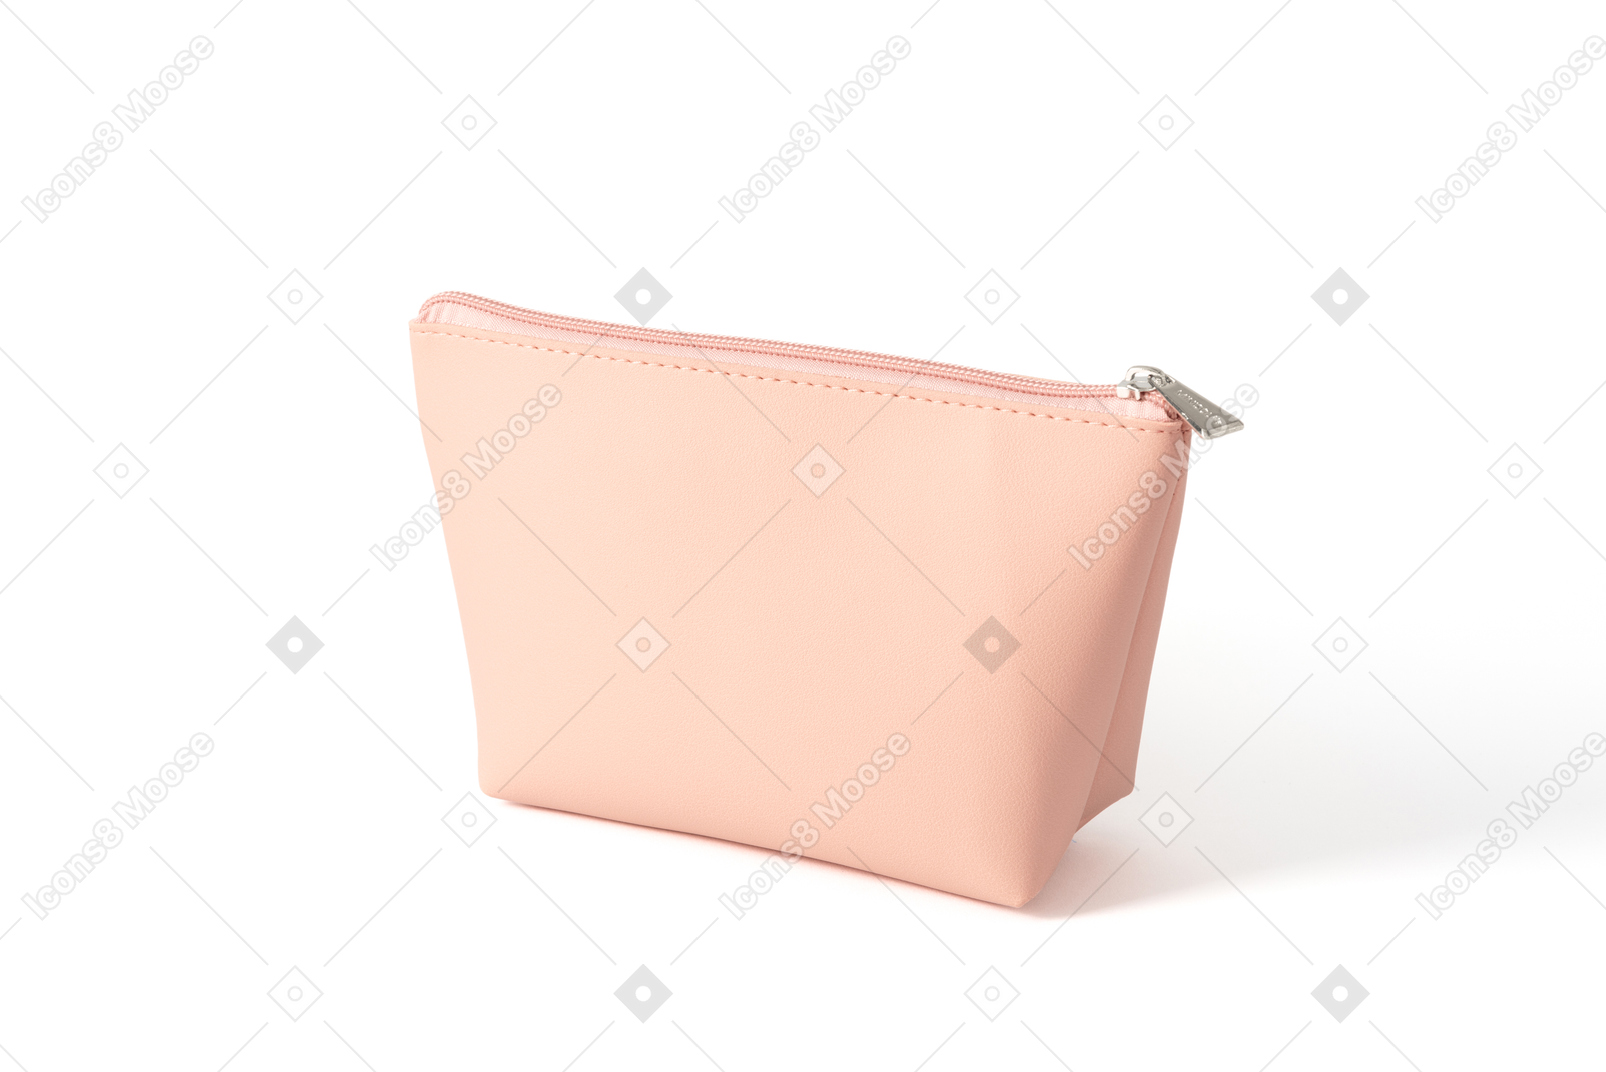 Pink makeup bag